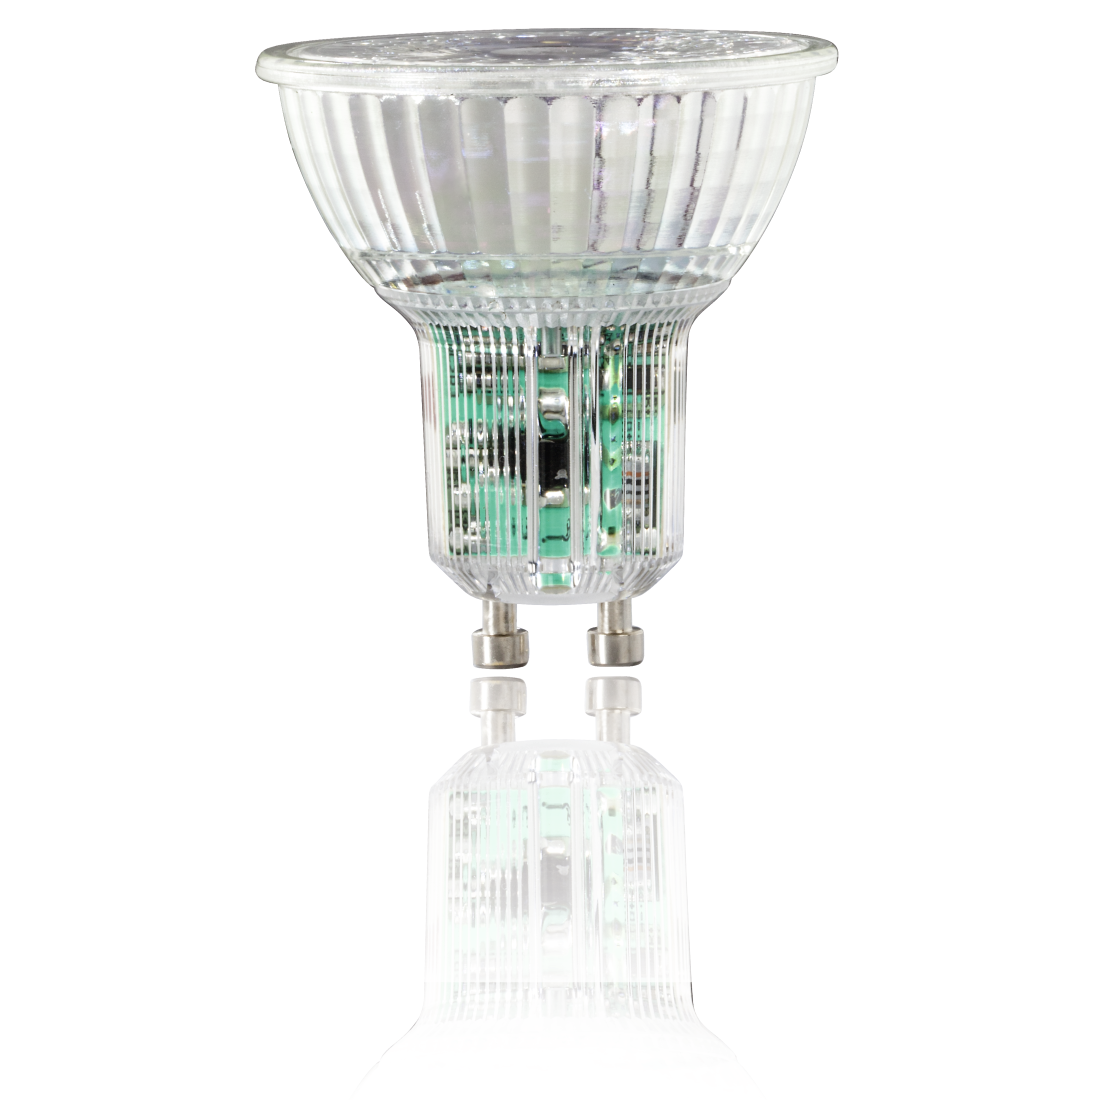 abx2 High-Res Image 2 - Xavax, Ampoule LED, GU10, 350lm rempl 50W, réfl. PAR16, blc chd, verre, intensité